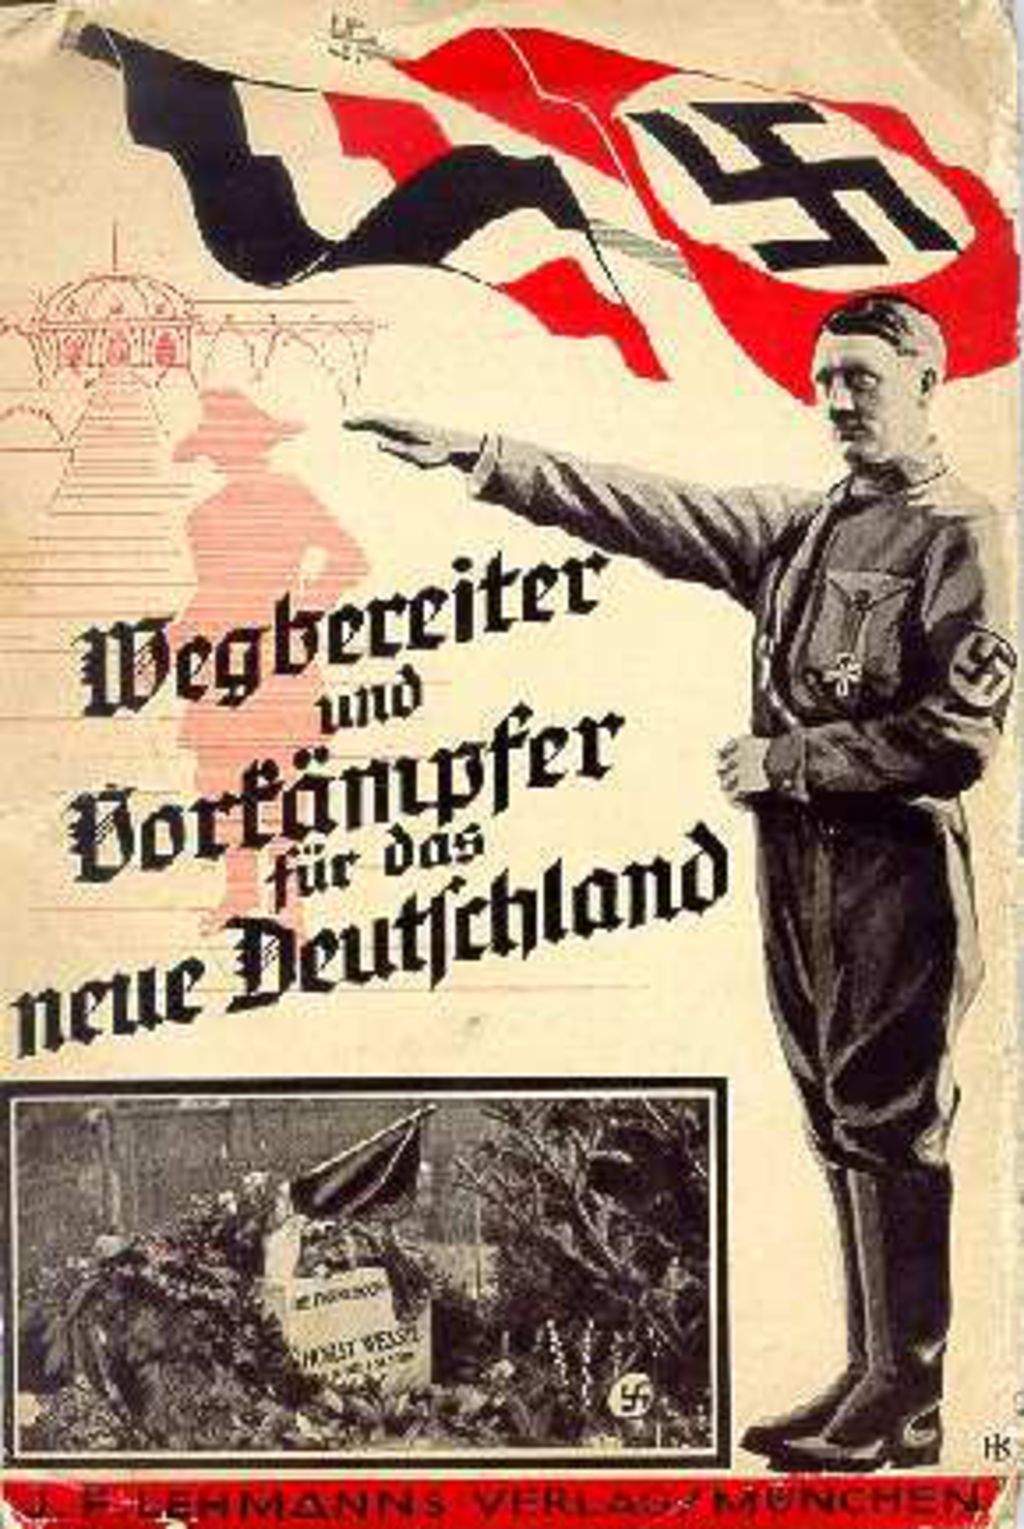 Exponat: Broschüre: "Wegbereiter und Vorkämpfer für das neue Deutschland", 1933